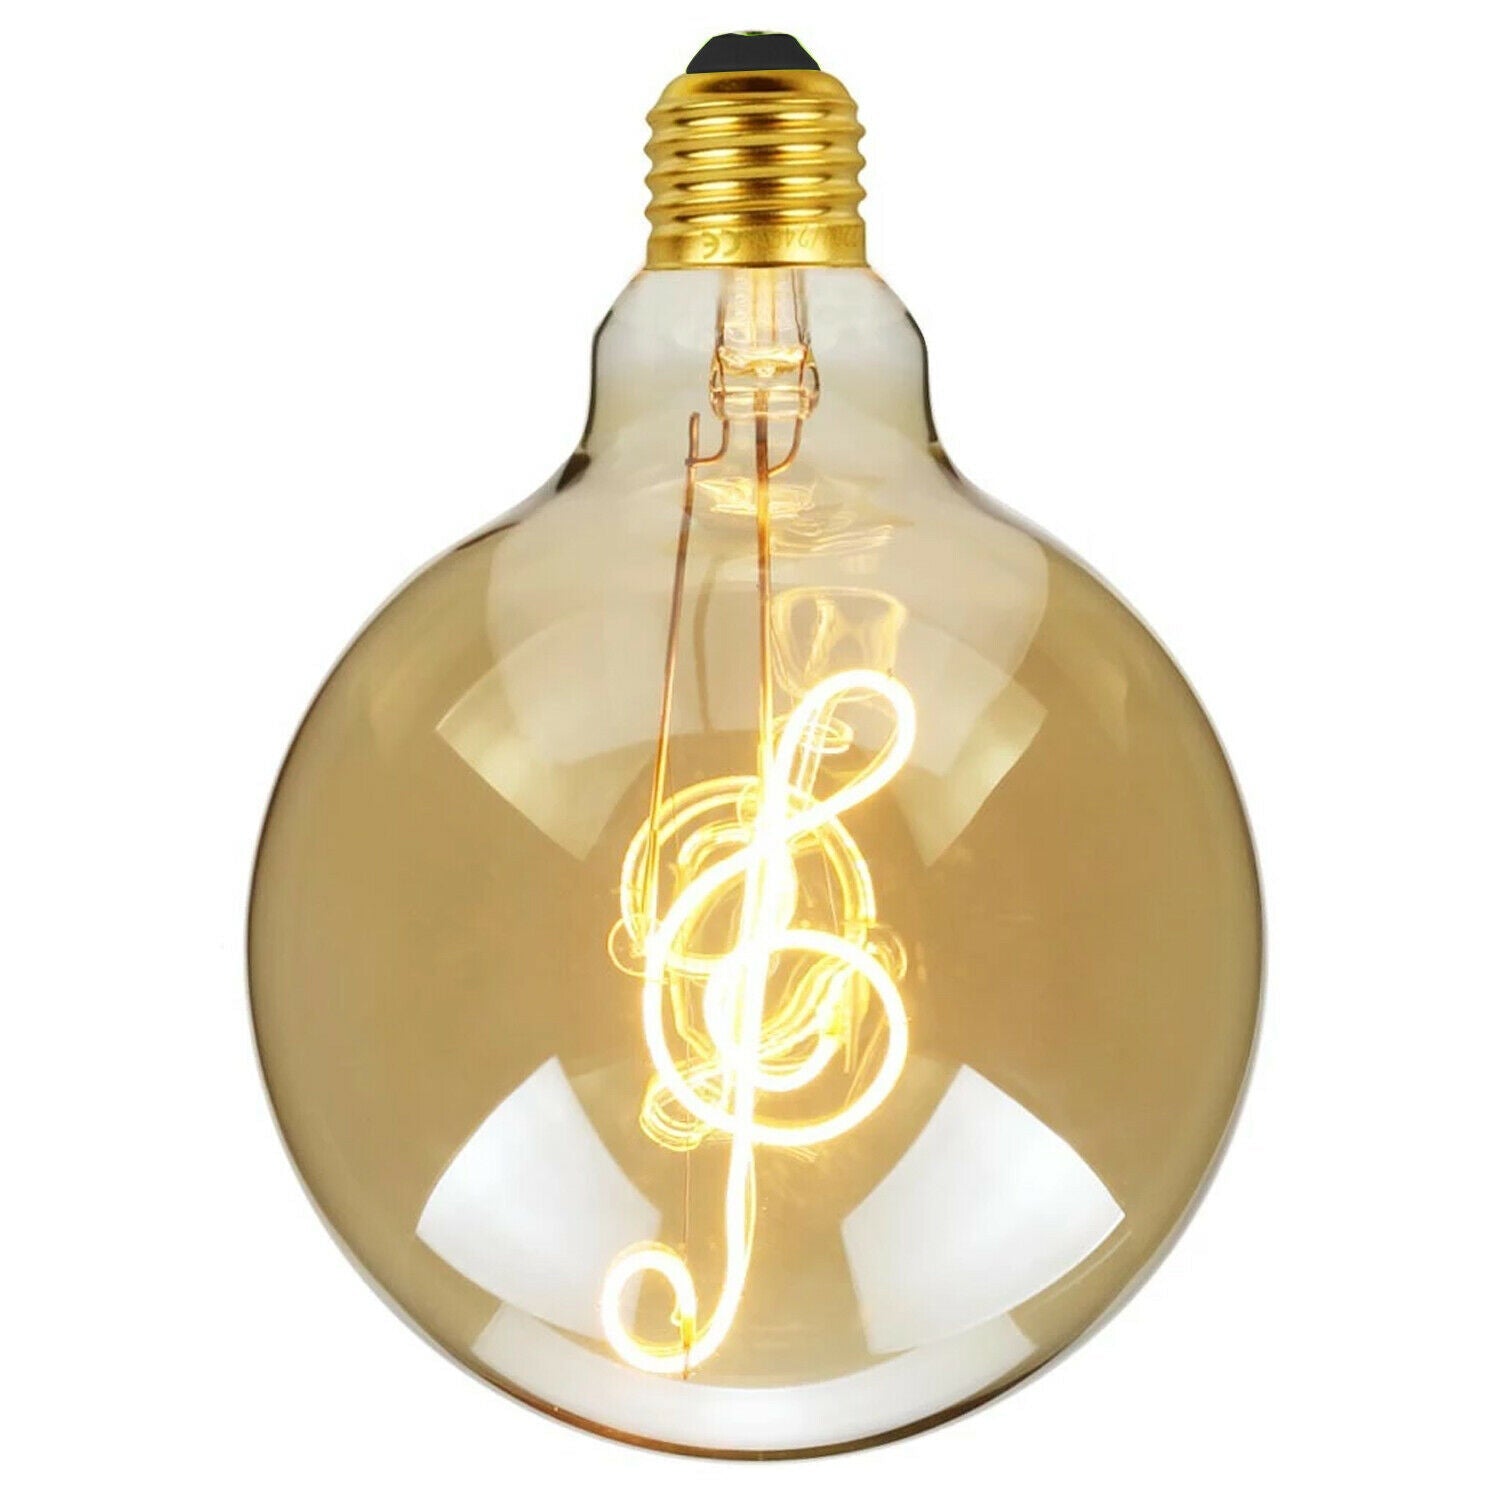 E27 Music Filament LED Light Bulb